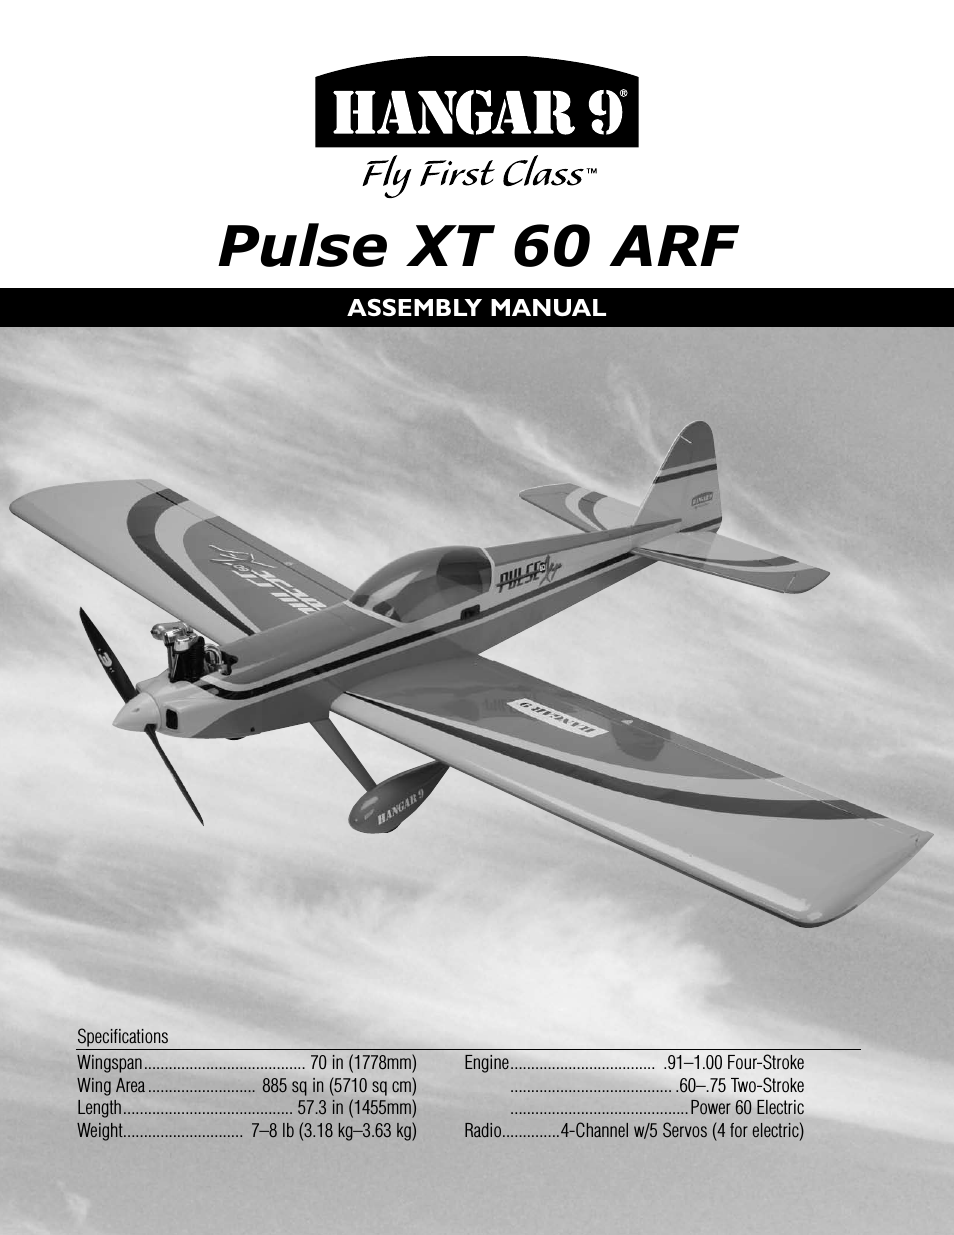 Pulse XT 60 ARF